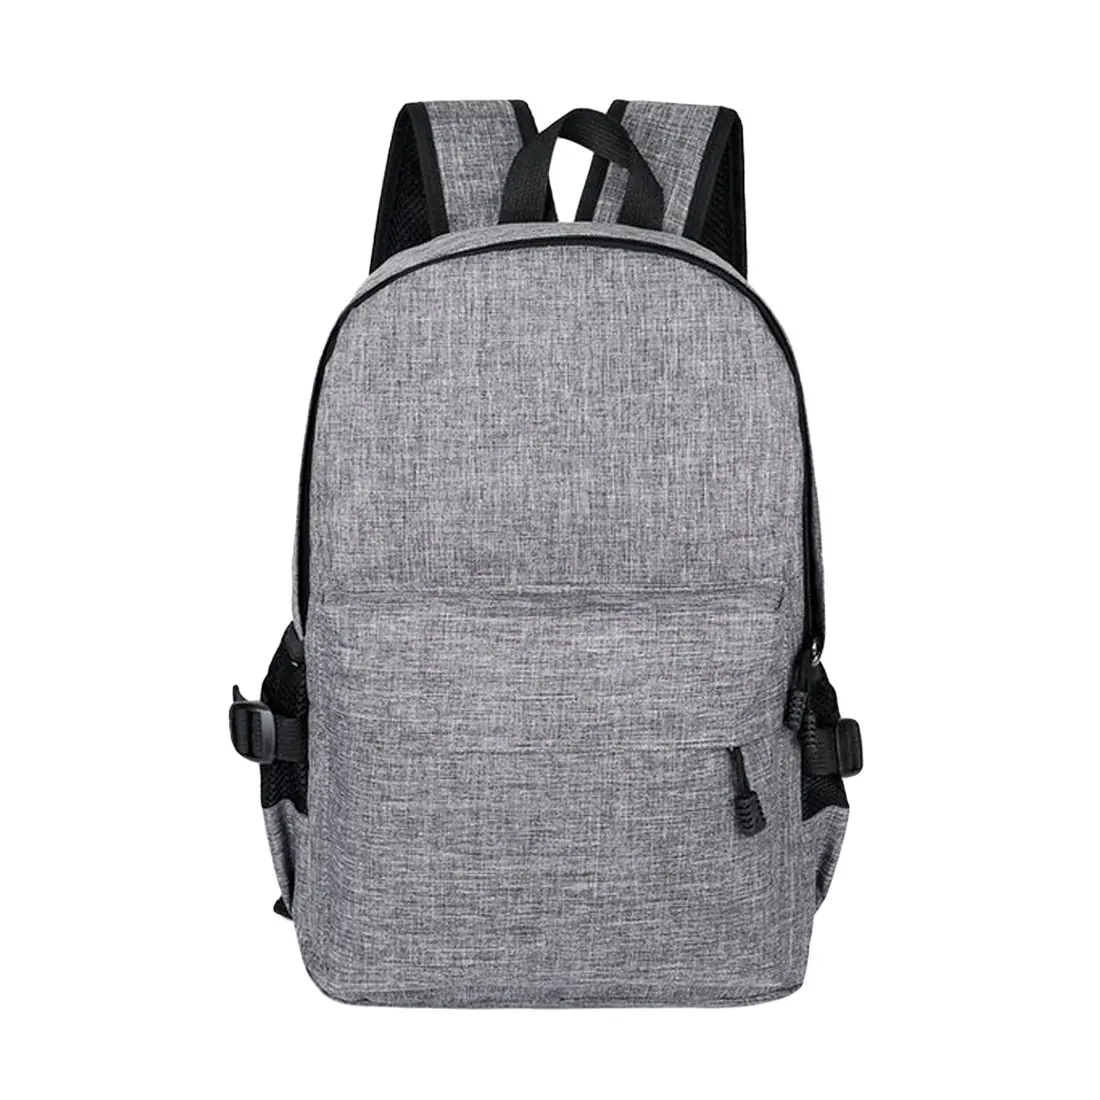 Сумки для подростков, дорожная сумка для ноутбука с защитой от кражи, рюкзак, Usb зарядка, школьный рюкзак, мужские сумки, школьный рюкзак - Цвет: grey